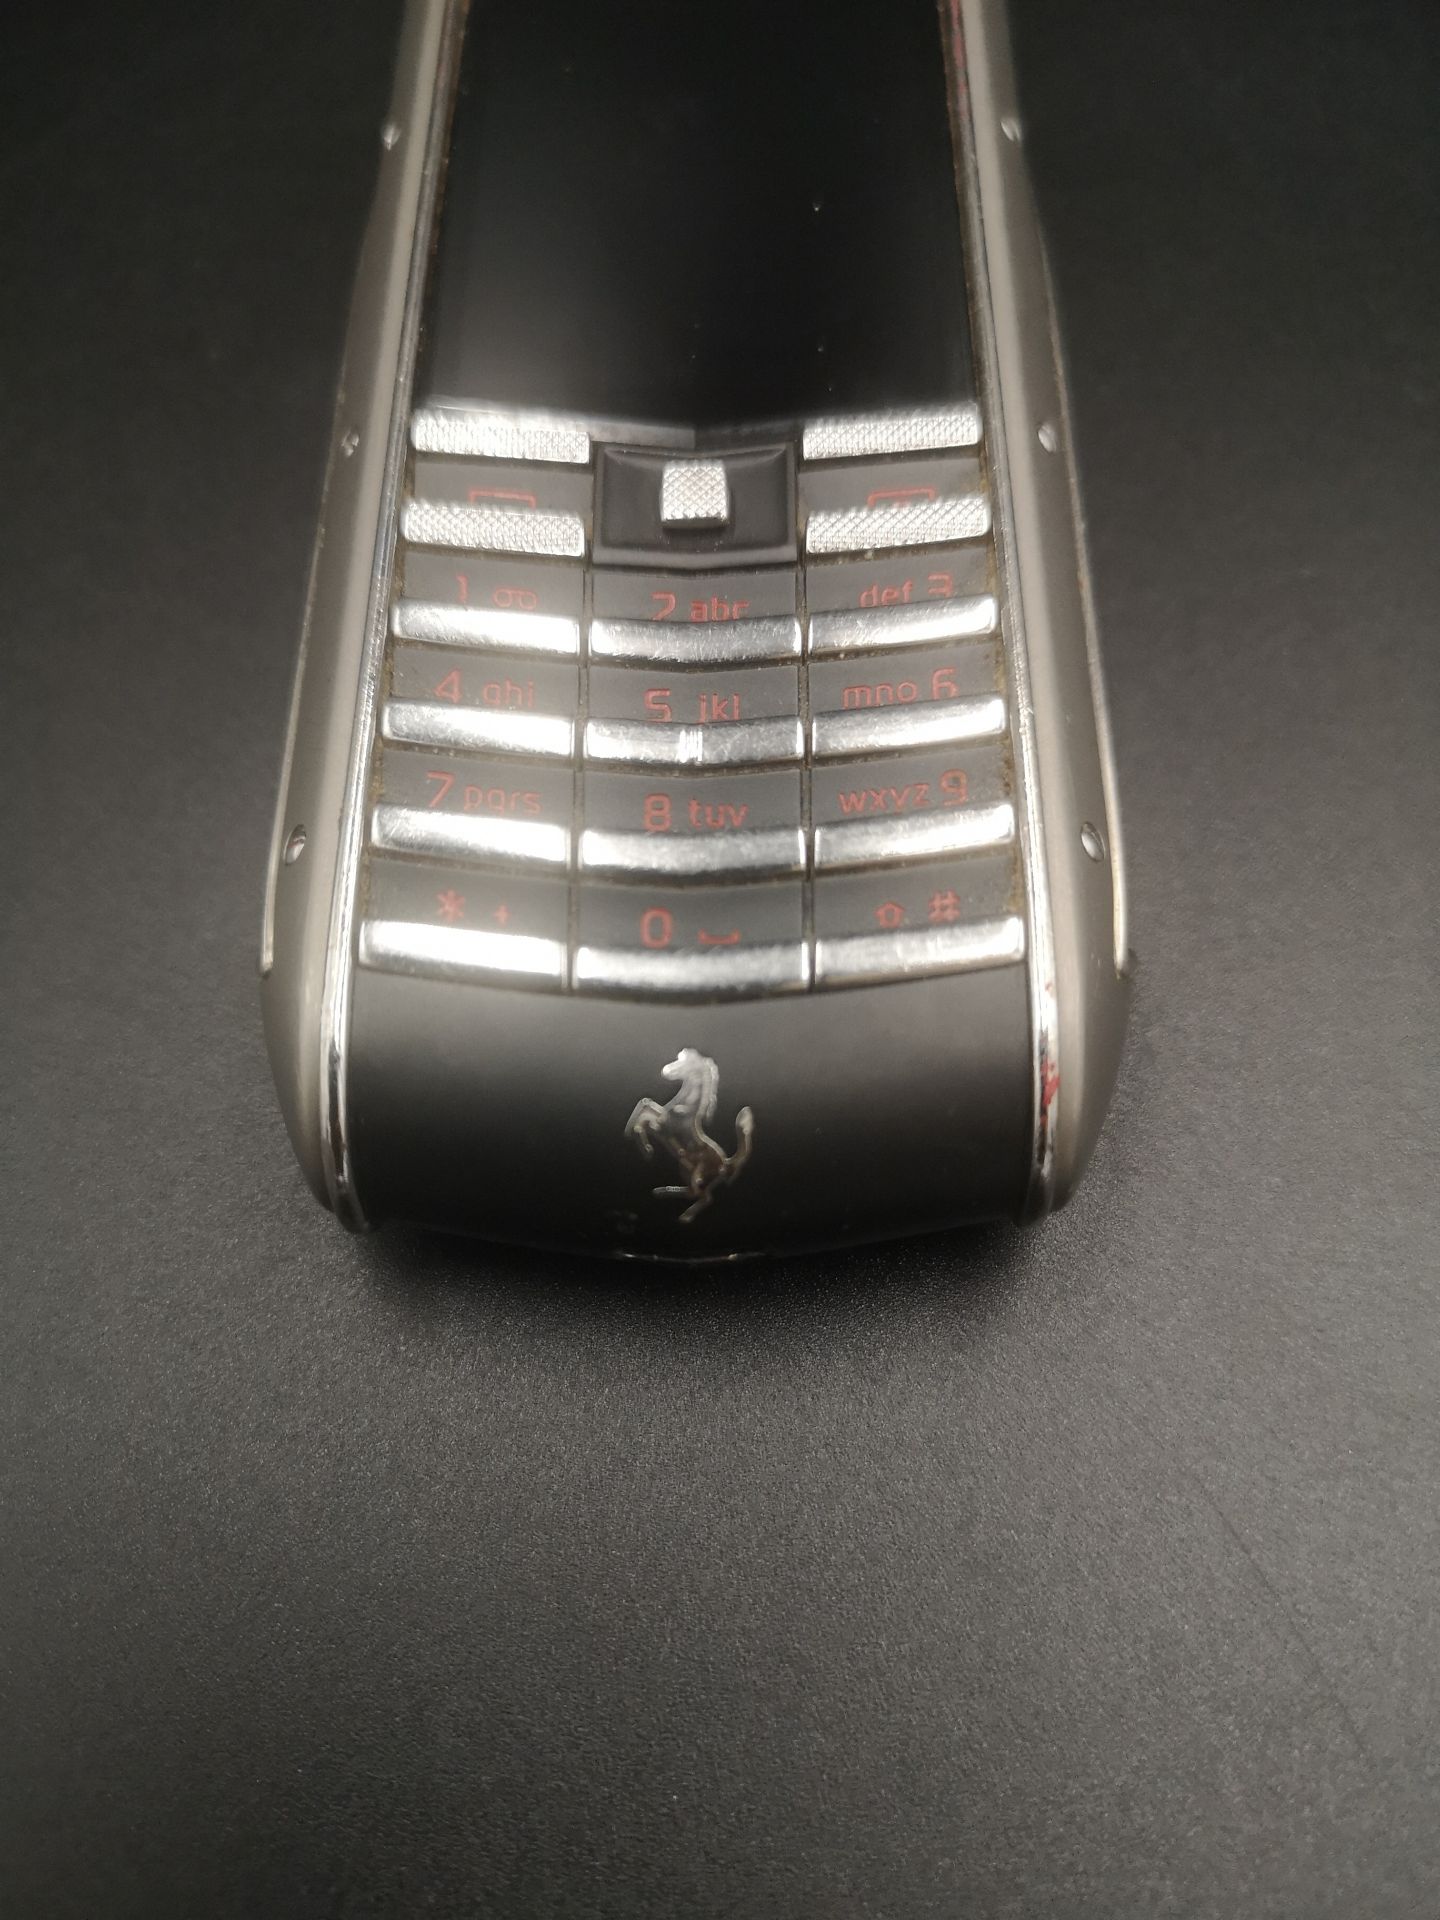 Ferrari Vertu Special Edition mobile phone - Image 3 of 5